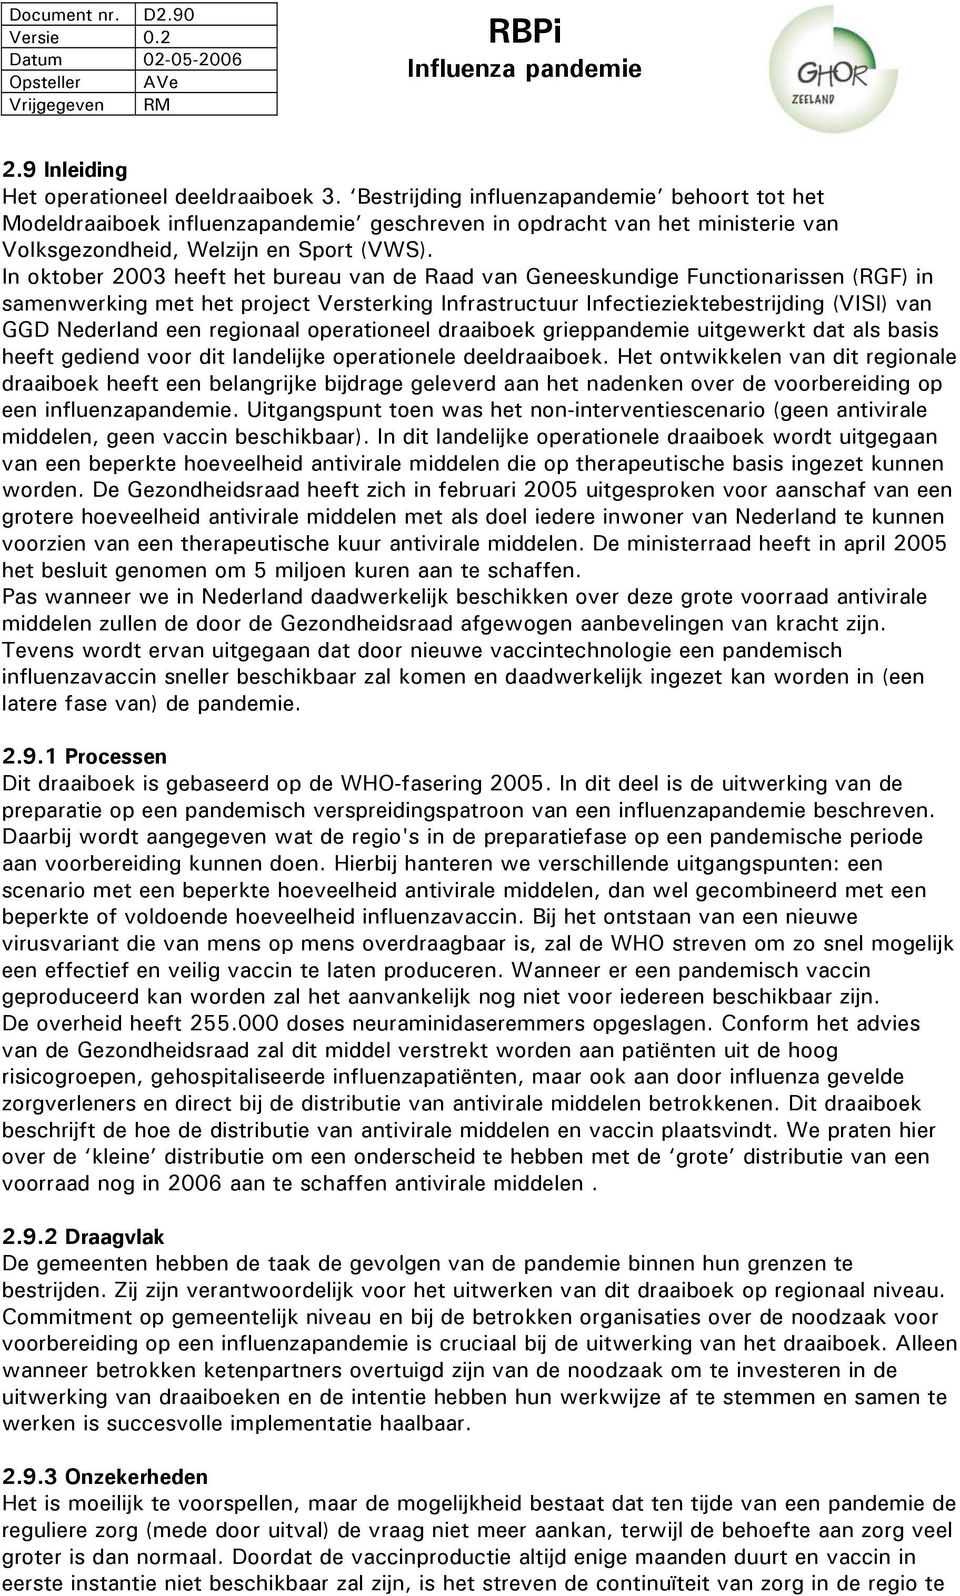 In oktober 2003 heeft het bureau van de Raad van Geneeskundige Functionarissen (RGF) in samenwerking met het project Versterking Infrastructuur Infectieziektebestrijding (VISI) van GGD Nederland een